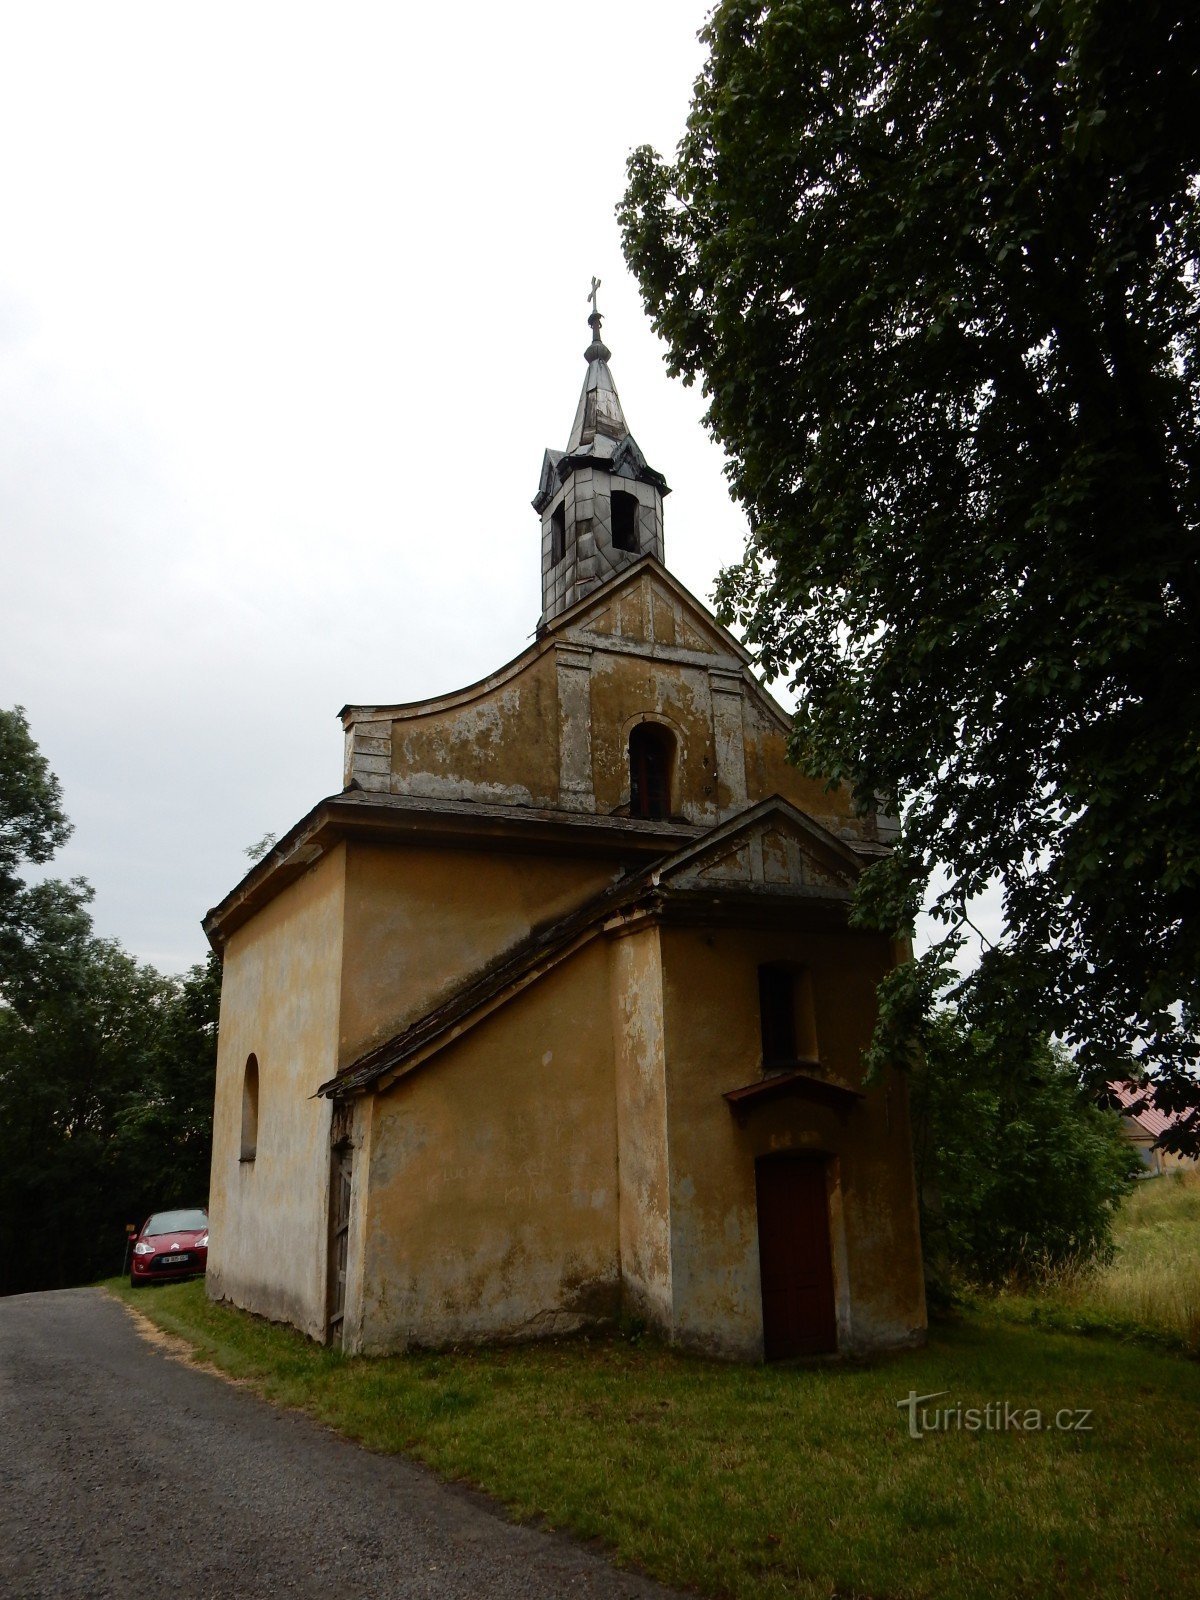 Lhotka - capela da Ascensão de St. crise